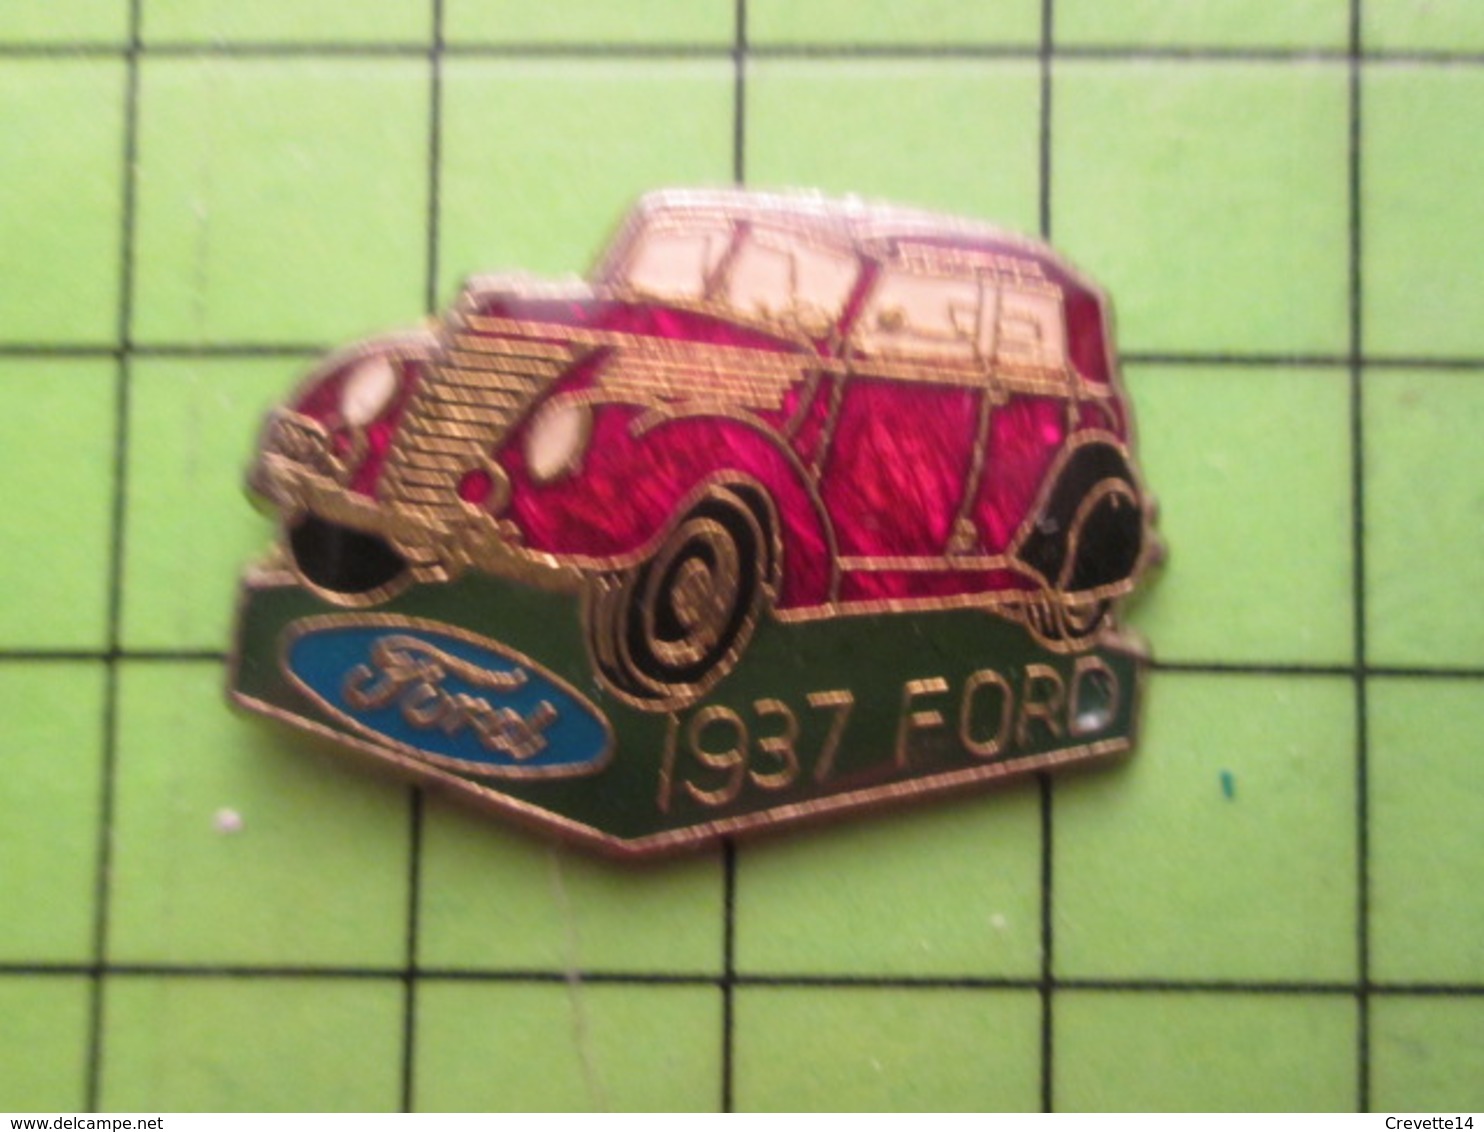 718c Pin's Pins / Rare Et De Belle Qualité / THEME AUTOMOBILE / FORD DE 1937 - Ford